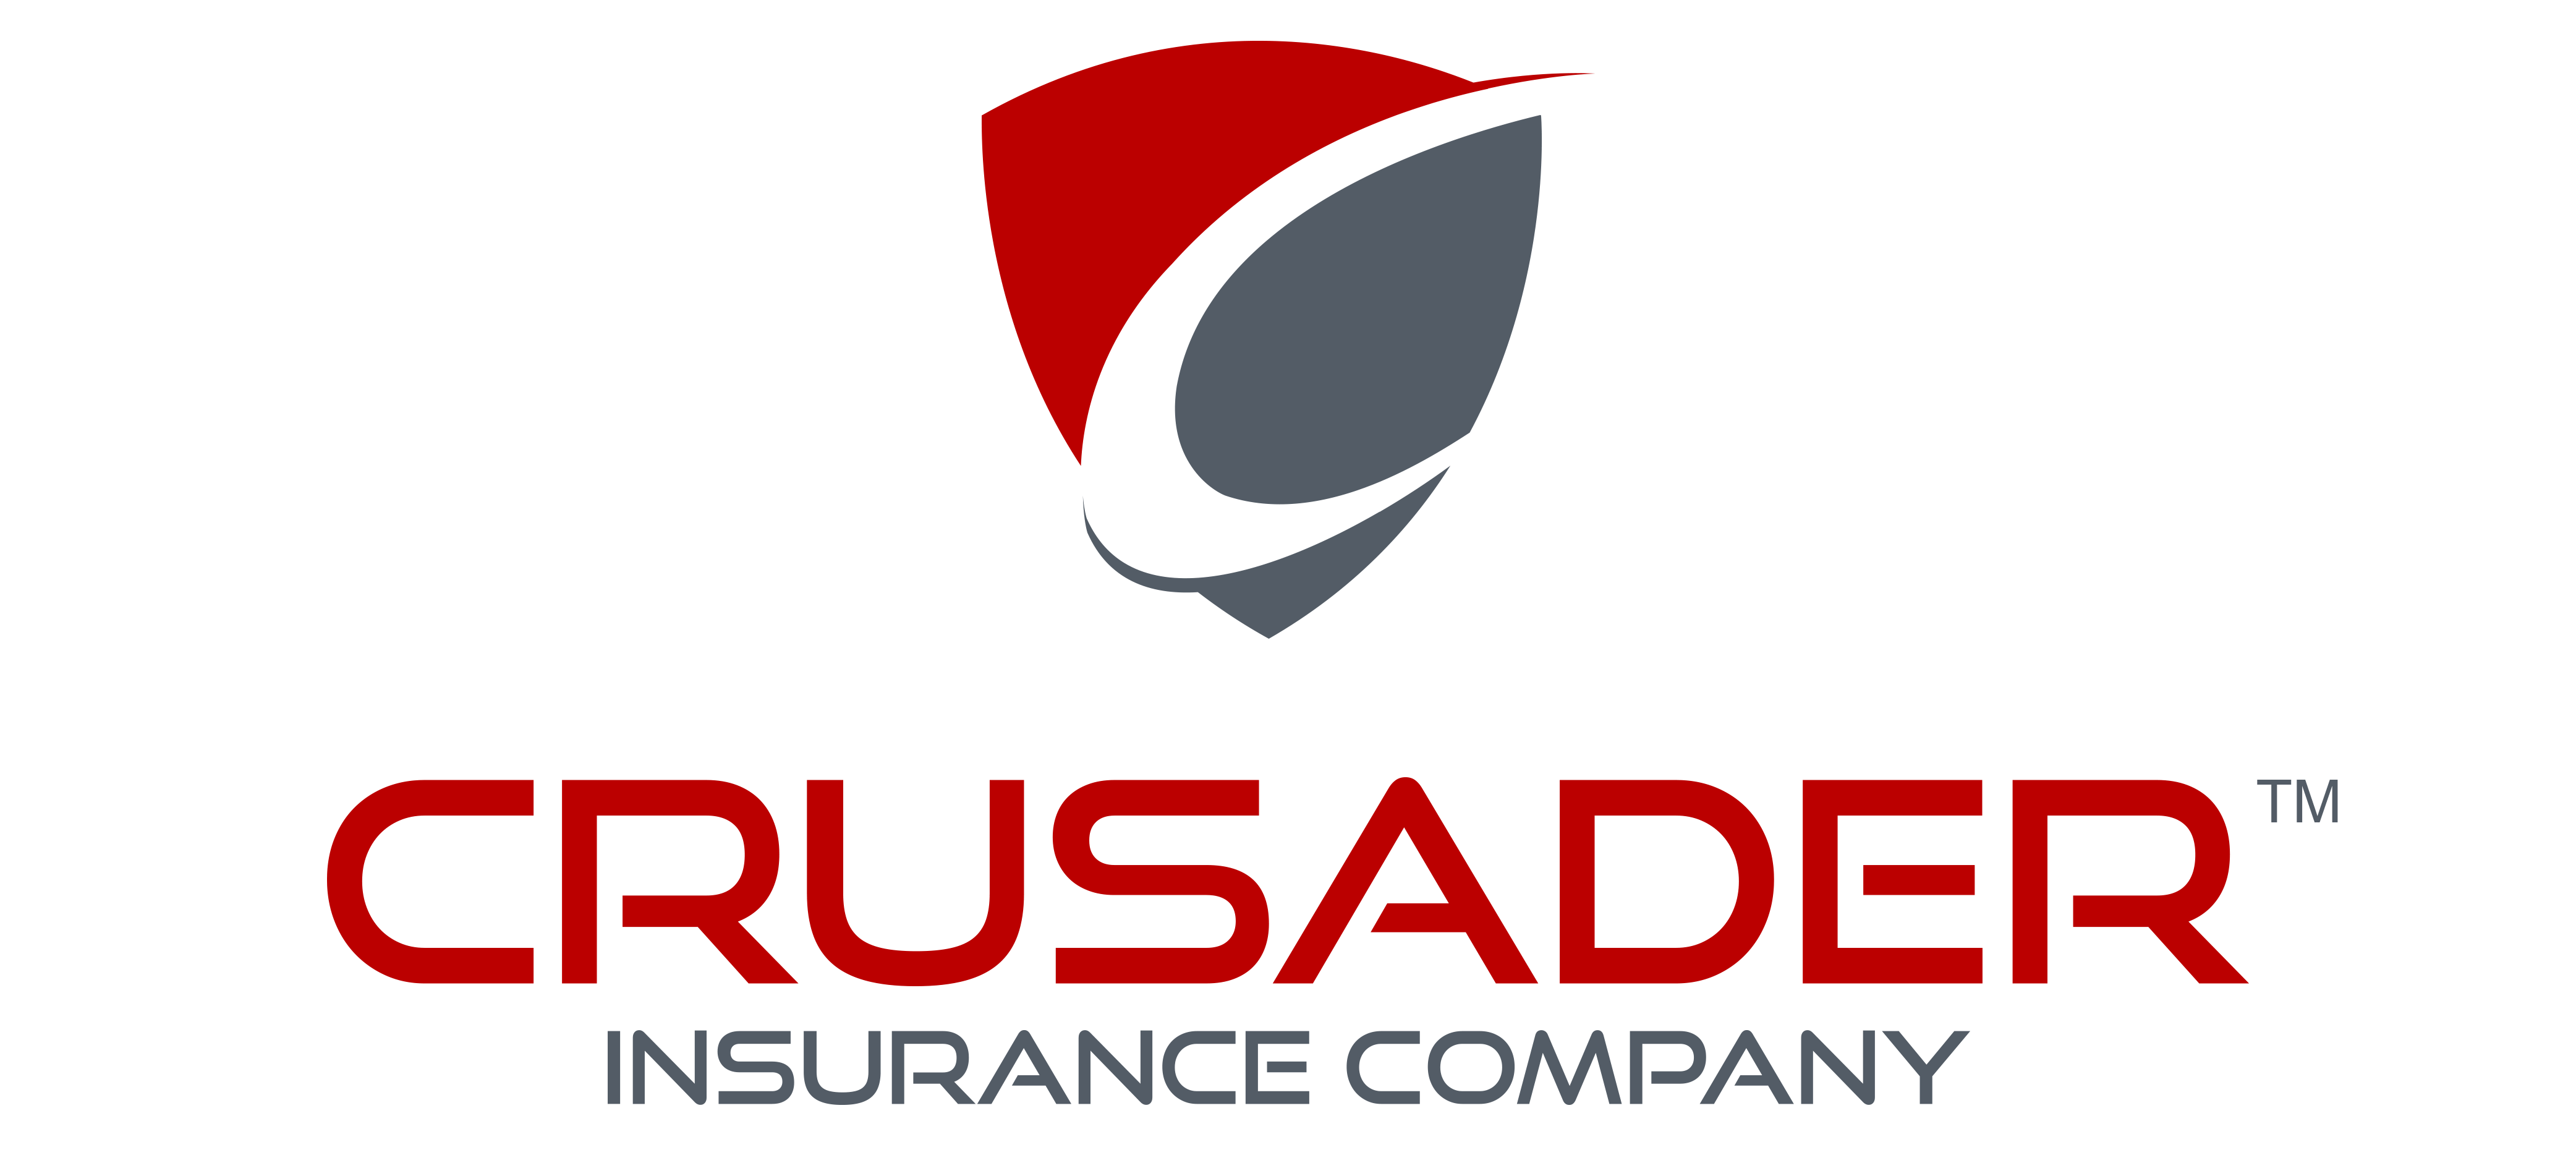 Crusader Logo - Crusader Logo With TM - Crusader Insurance